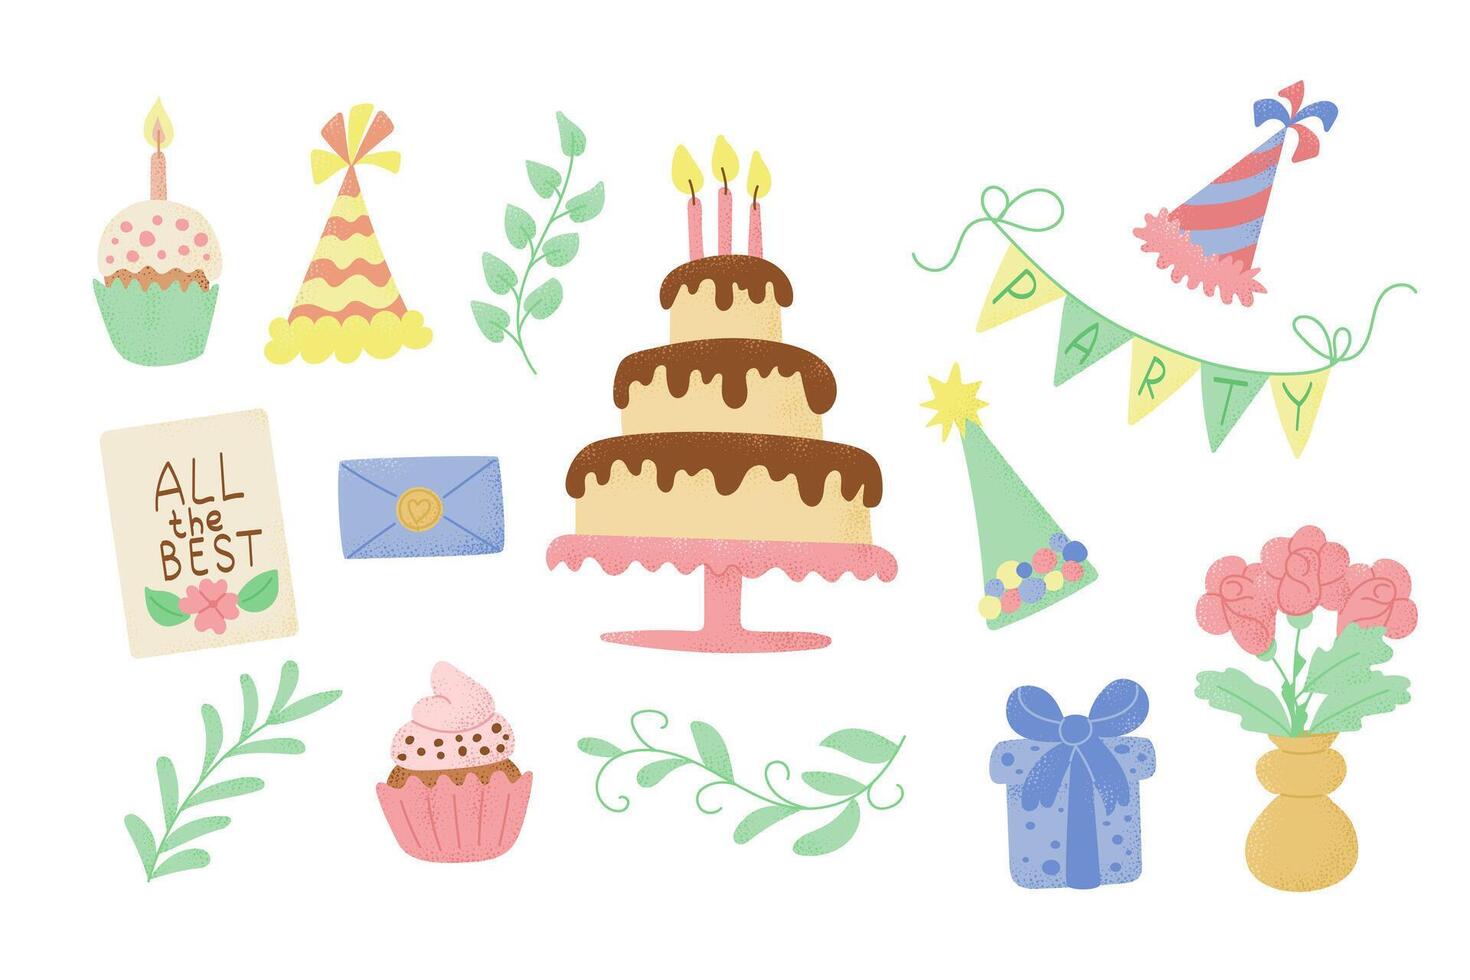 plano cumpleaños mano dibujado conjunto de artículos para niños fiesta con pastel y regalos. de moda texturizado ilustraciones en caramelo pastel colores aislado en blanco antecedentes vector